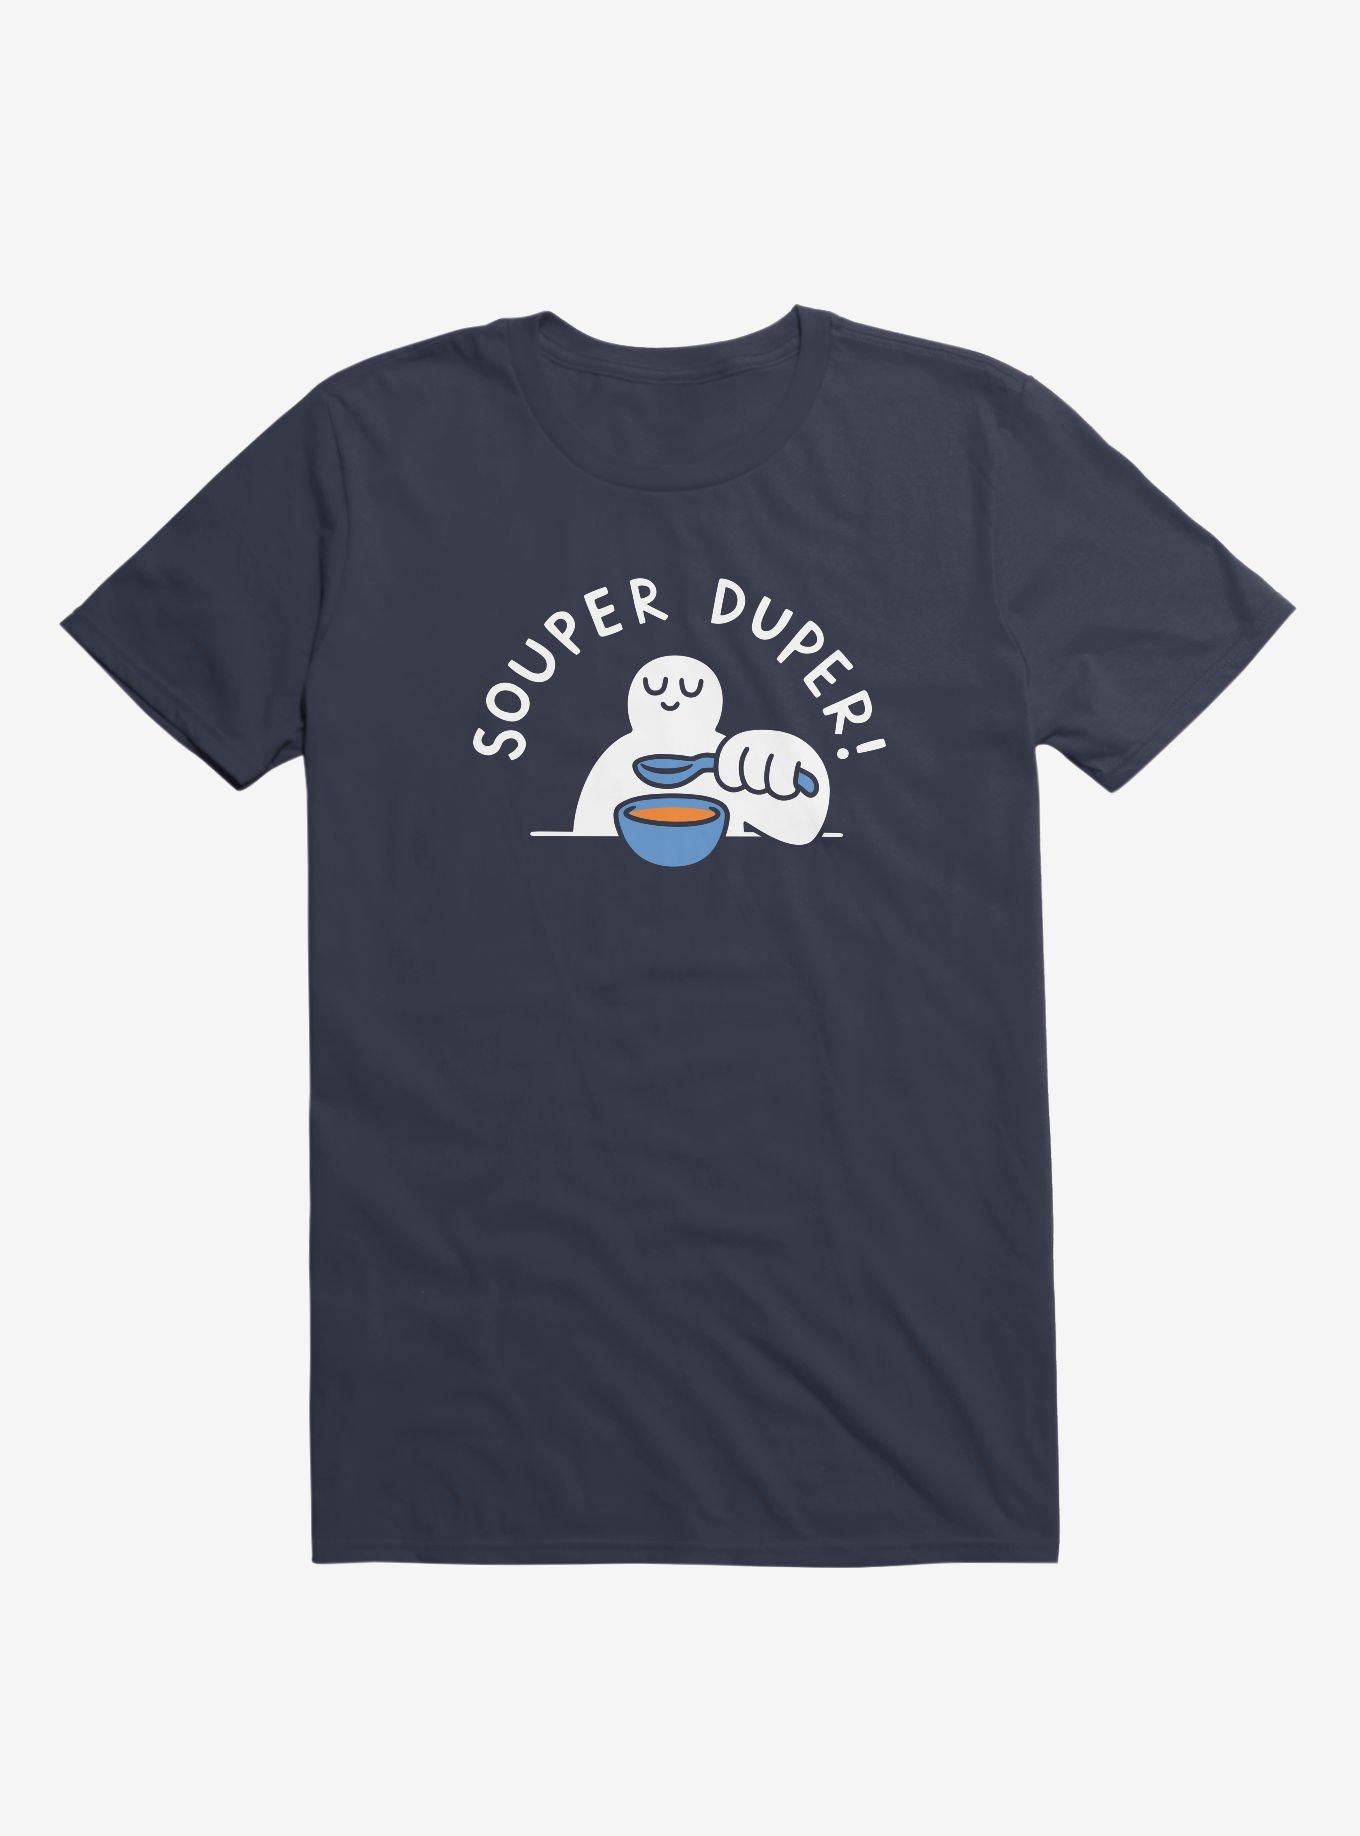 Souper Duper! Navy Blue T-Shirt, NAVY, hi-res